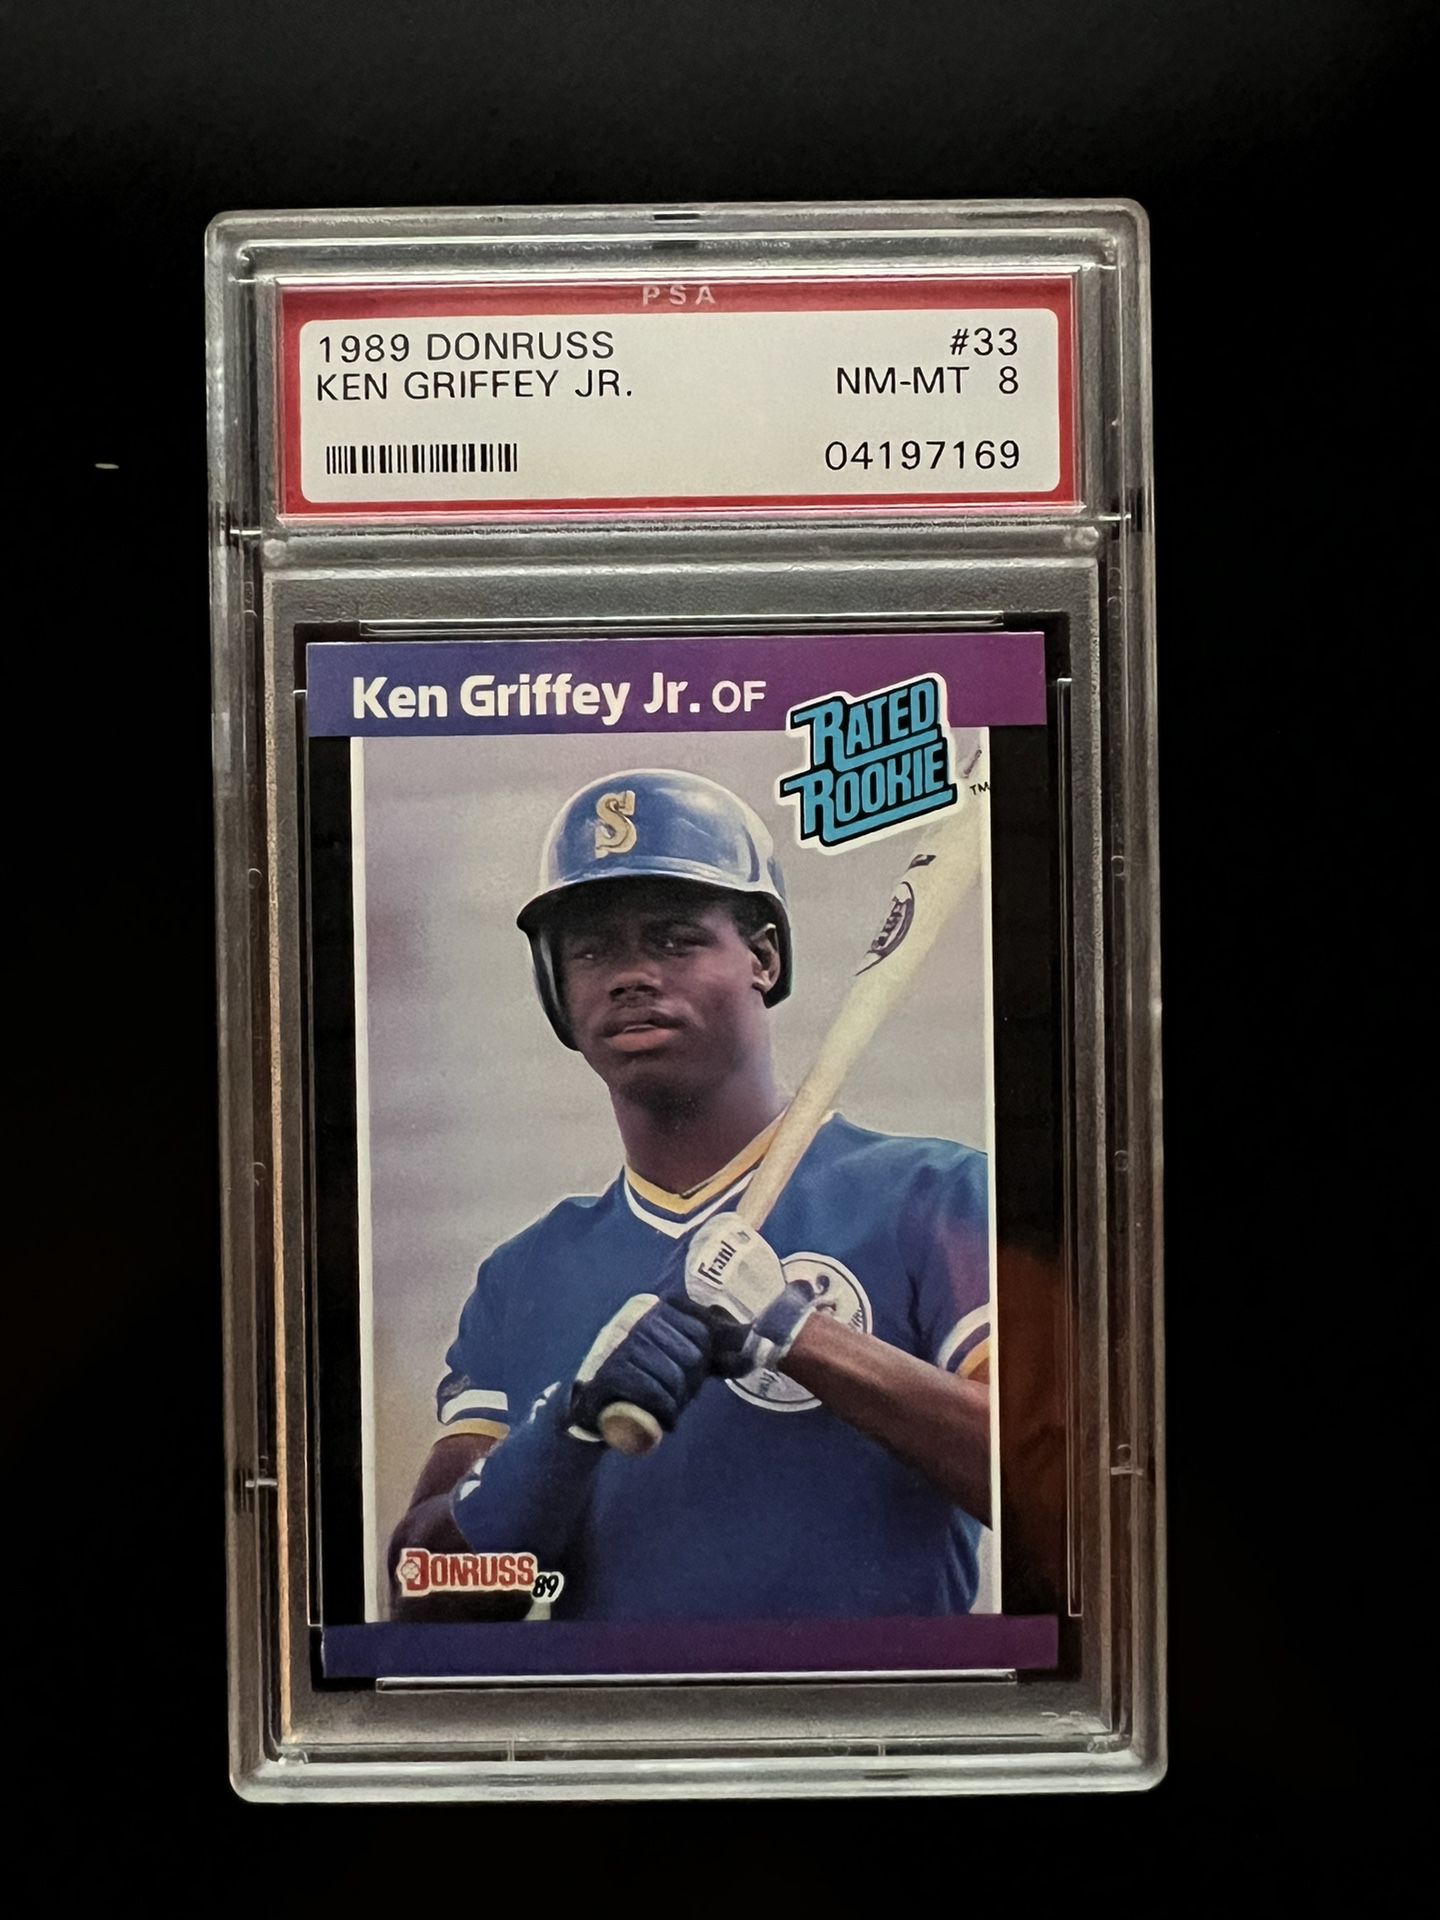 1989 DONRUSS KEN GRIFFEY JR #33 ROOKIE BASEBALL CARD RC PSA NM-MT 8